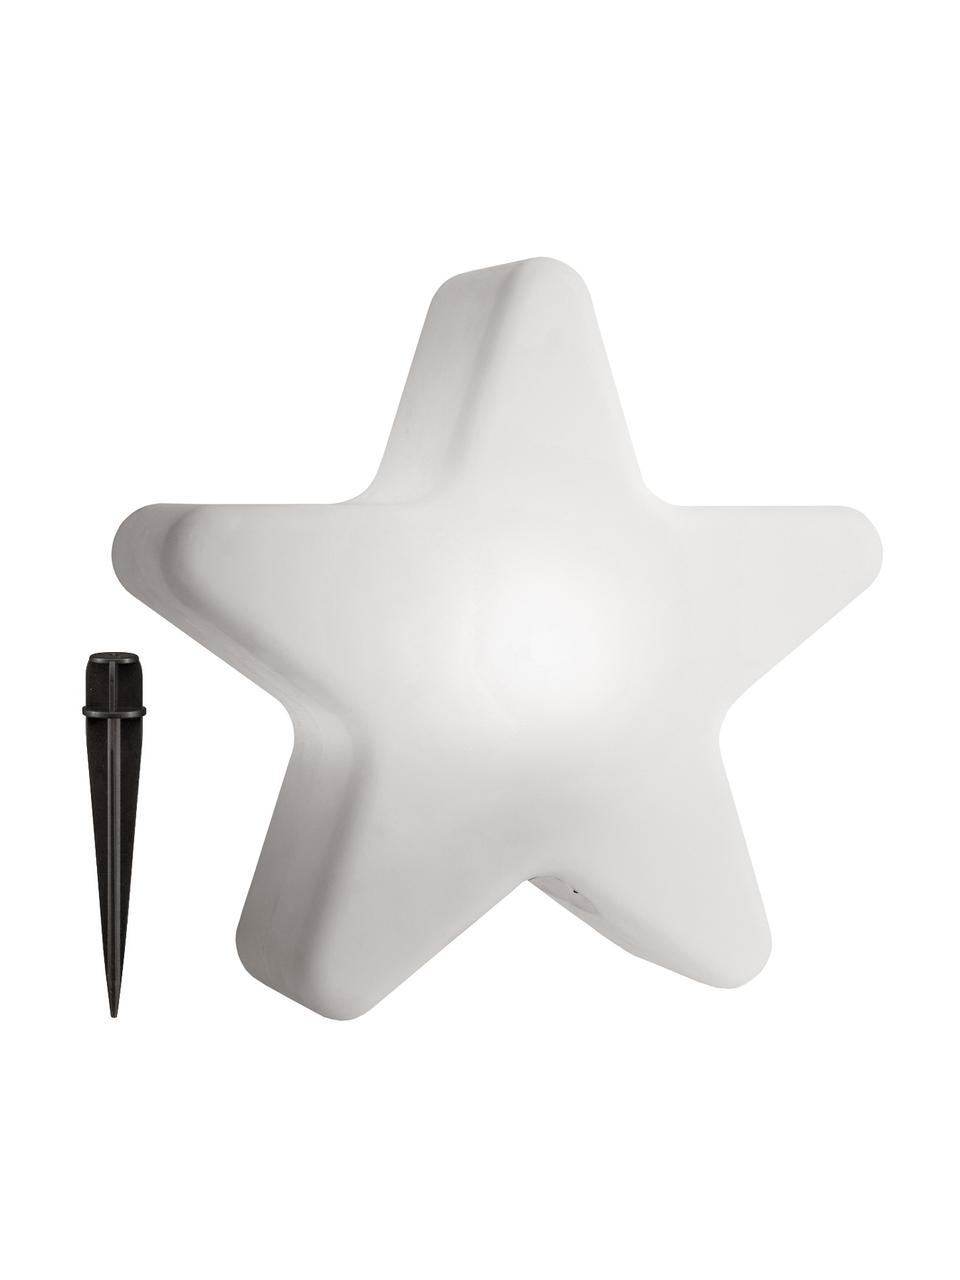 Bodenleuchte Star mit Stecker, Lampenschirm: Kunststoff, Weiss, 46 x 50 cm